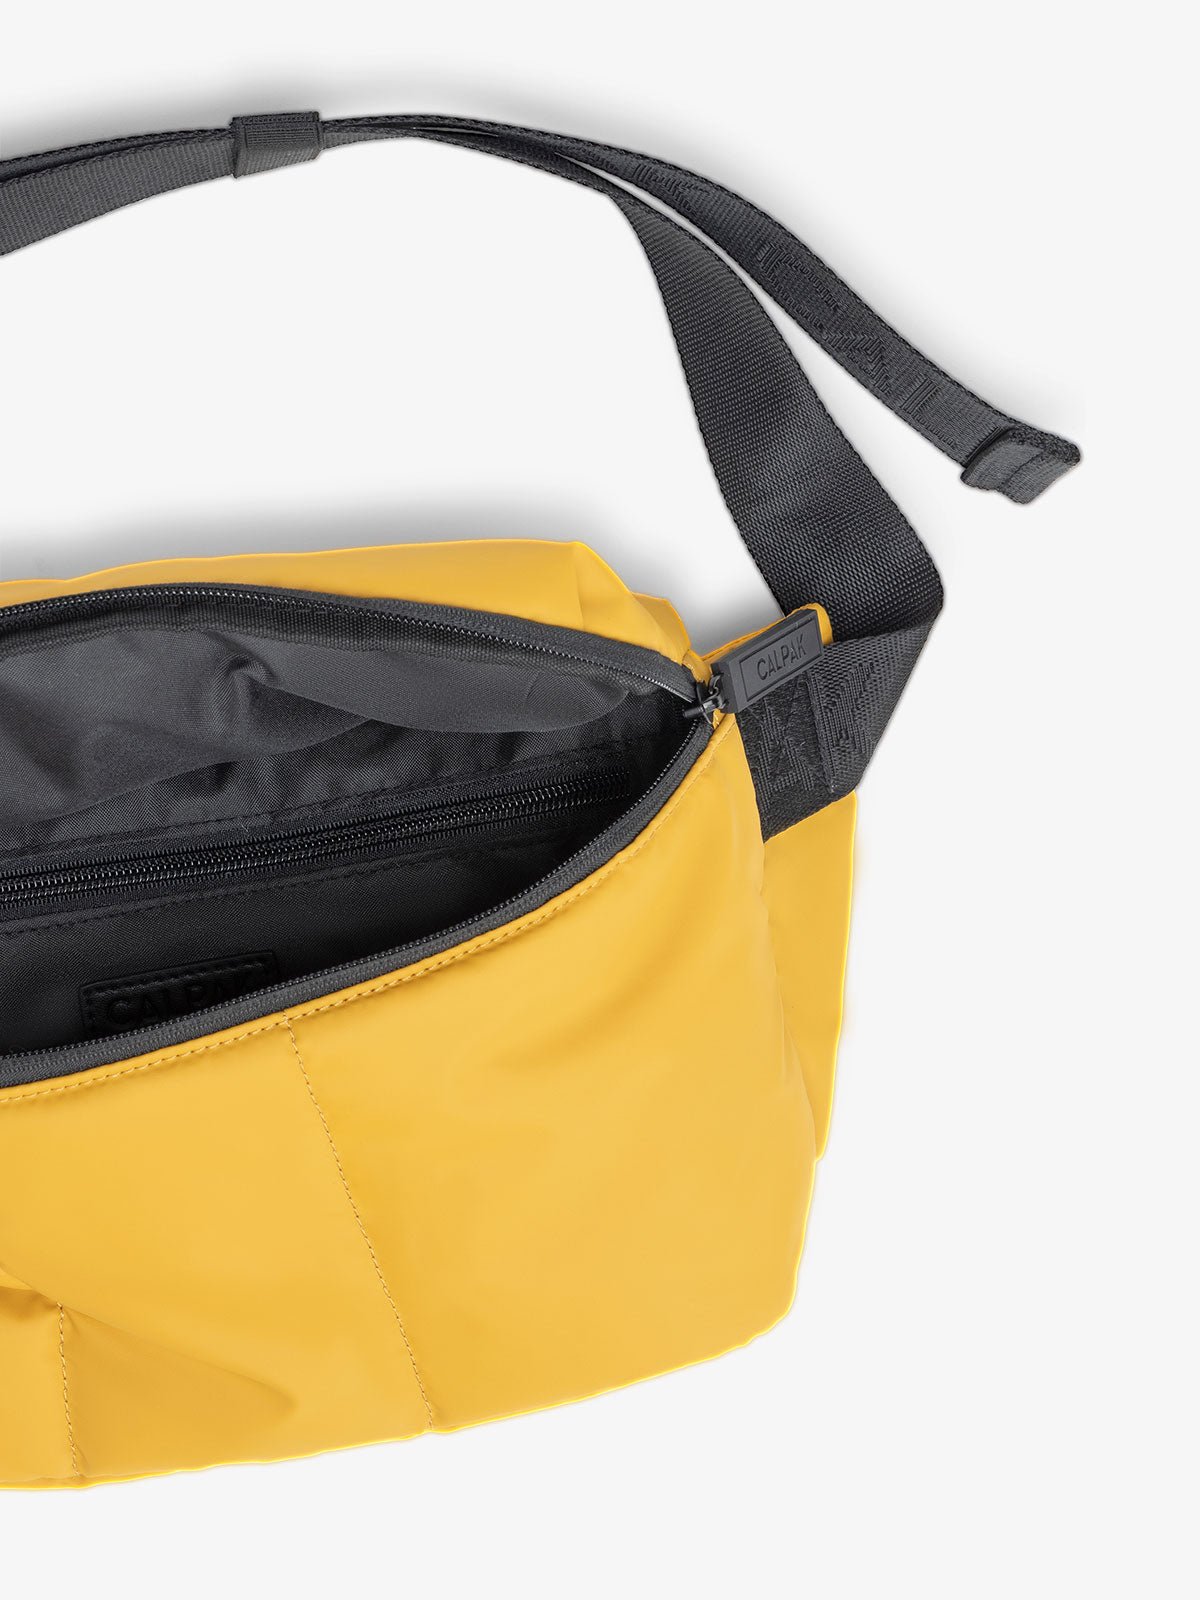 CALPAK Luka belt bag in yellow dijon color